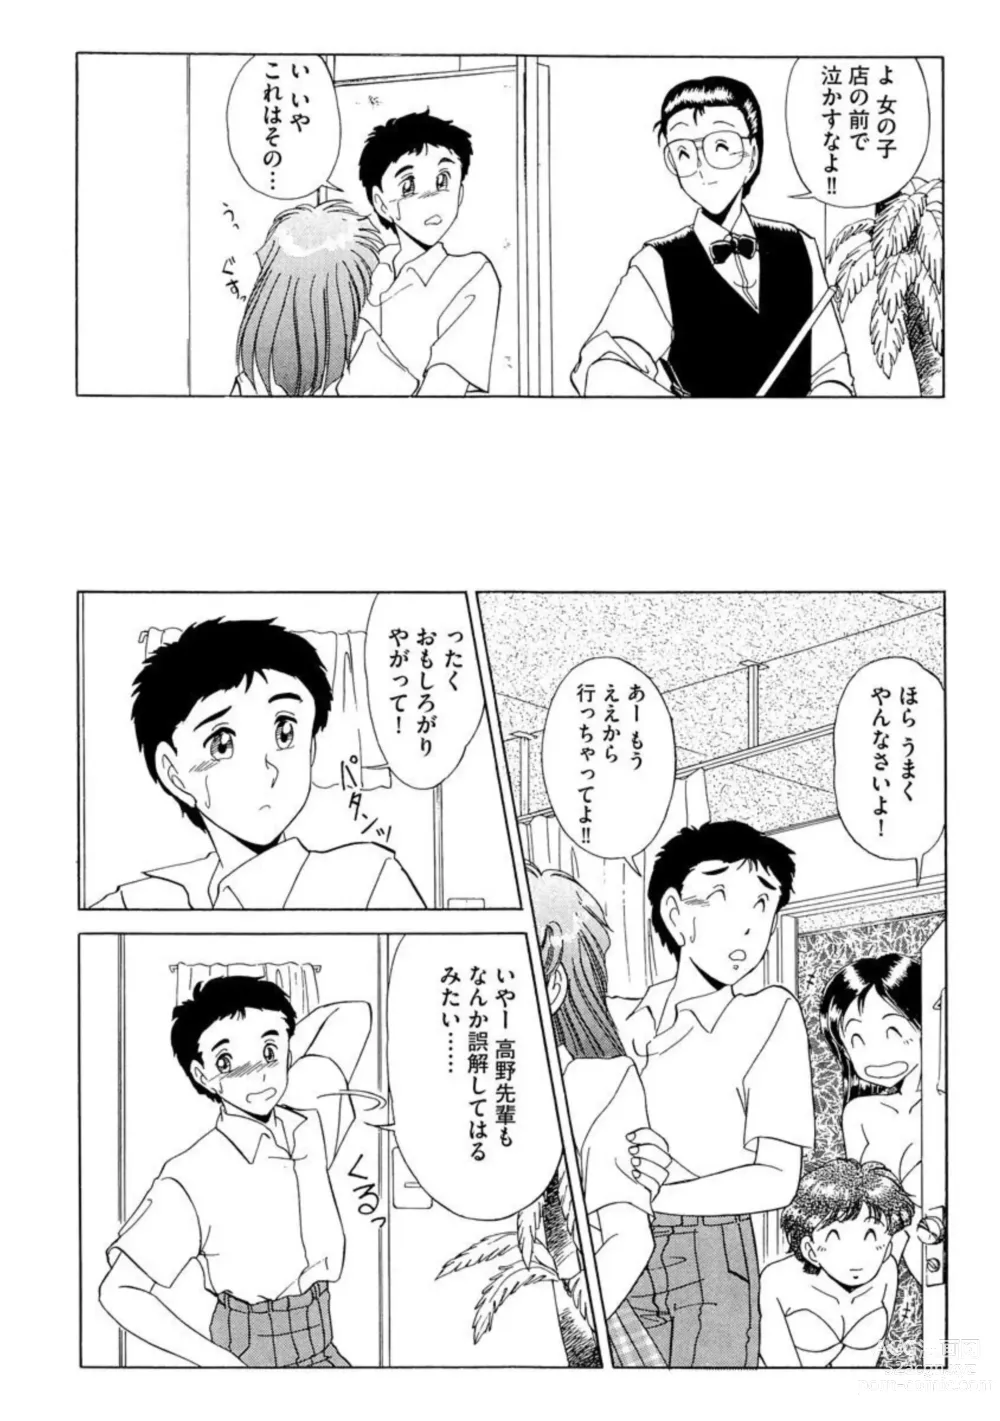 Page 15 of manga Ichiban Kimochi no ī o Furo 1